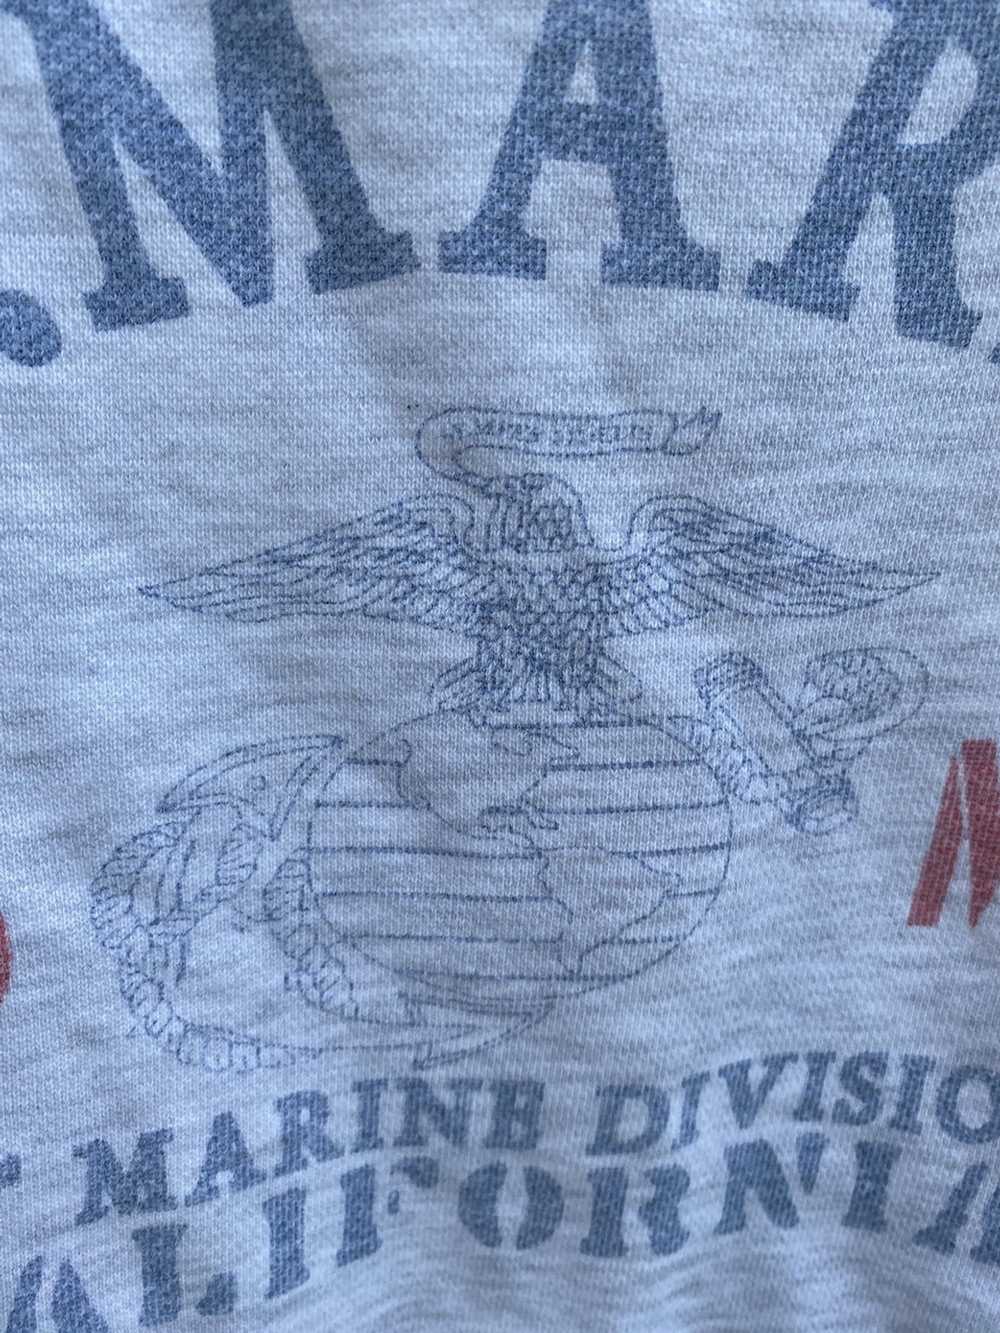 America × Usmc × Vintage Distressed U.S Marine 1s… - image 3